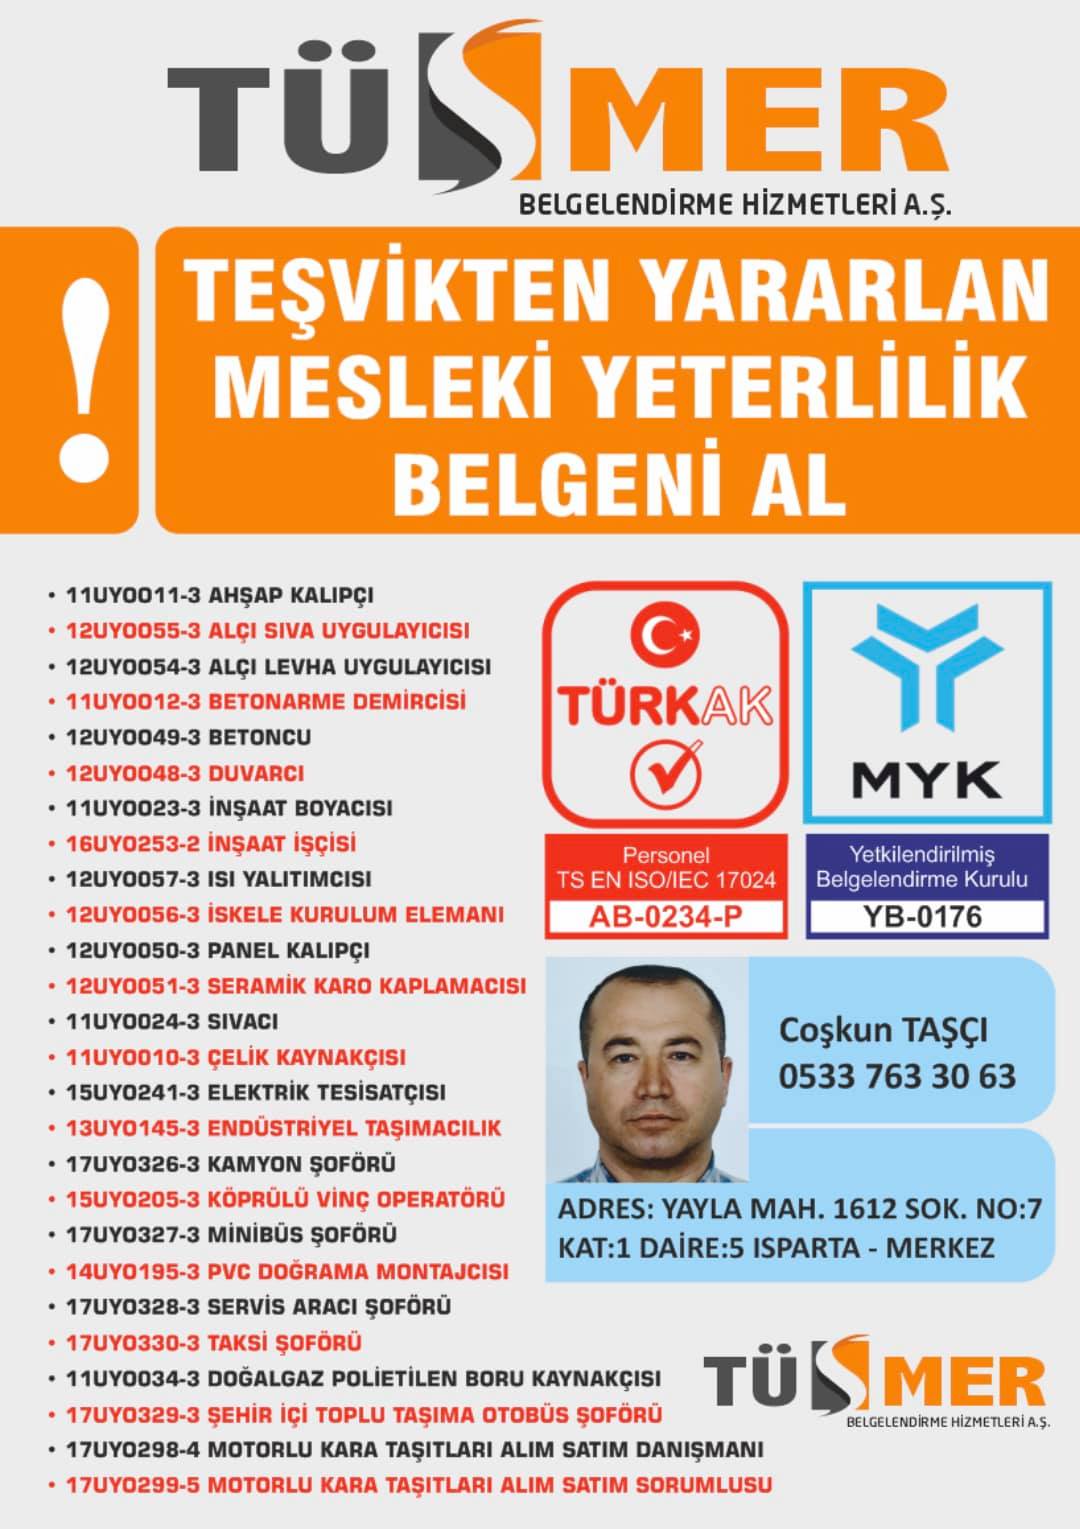 MYK MESLEKİ YETERLİLİK BELGESİ Akatlar Beşiktaş İstanbul